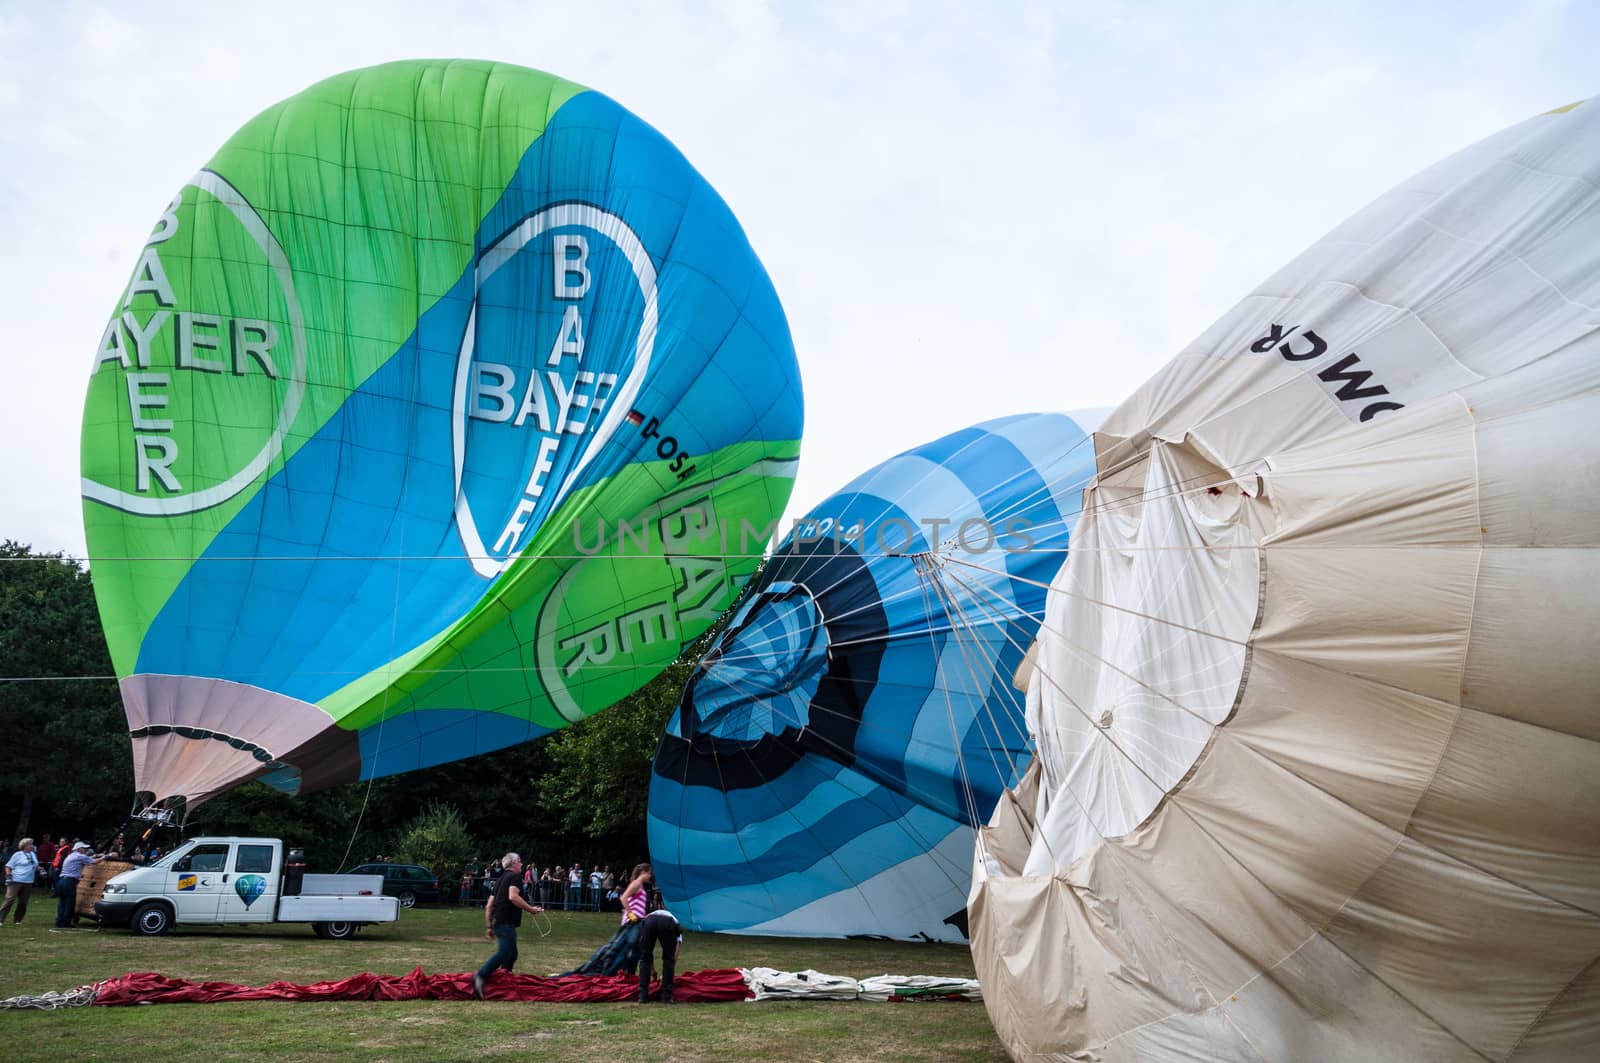 Hot air balloon festival in Muenster, Germany by Jule_Berlin